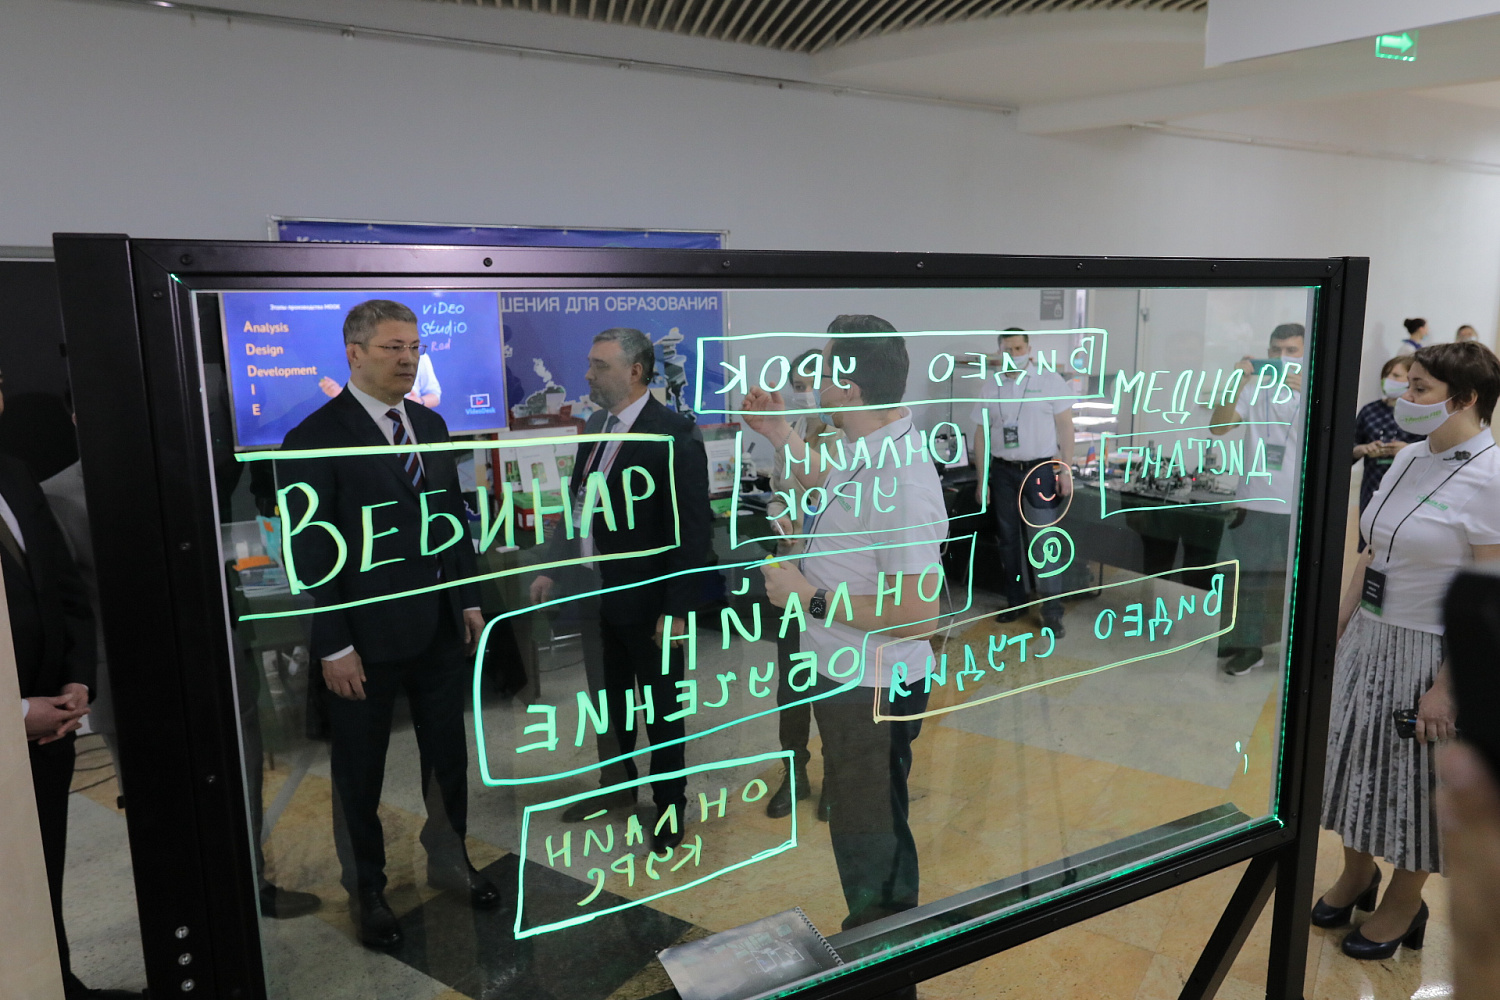 Нашу выставочную экспозицию посетил Глава Башкортостана Радий Хабиров